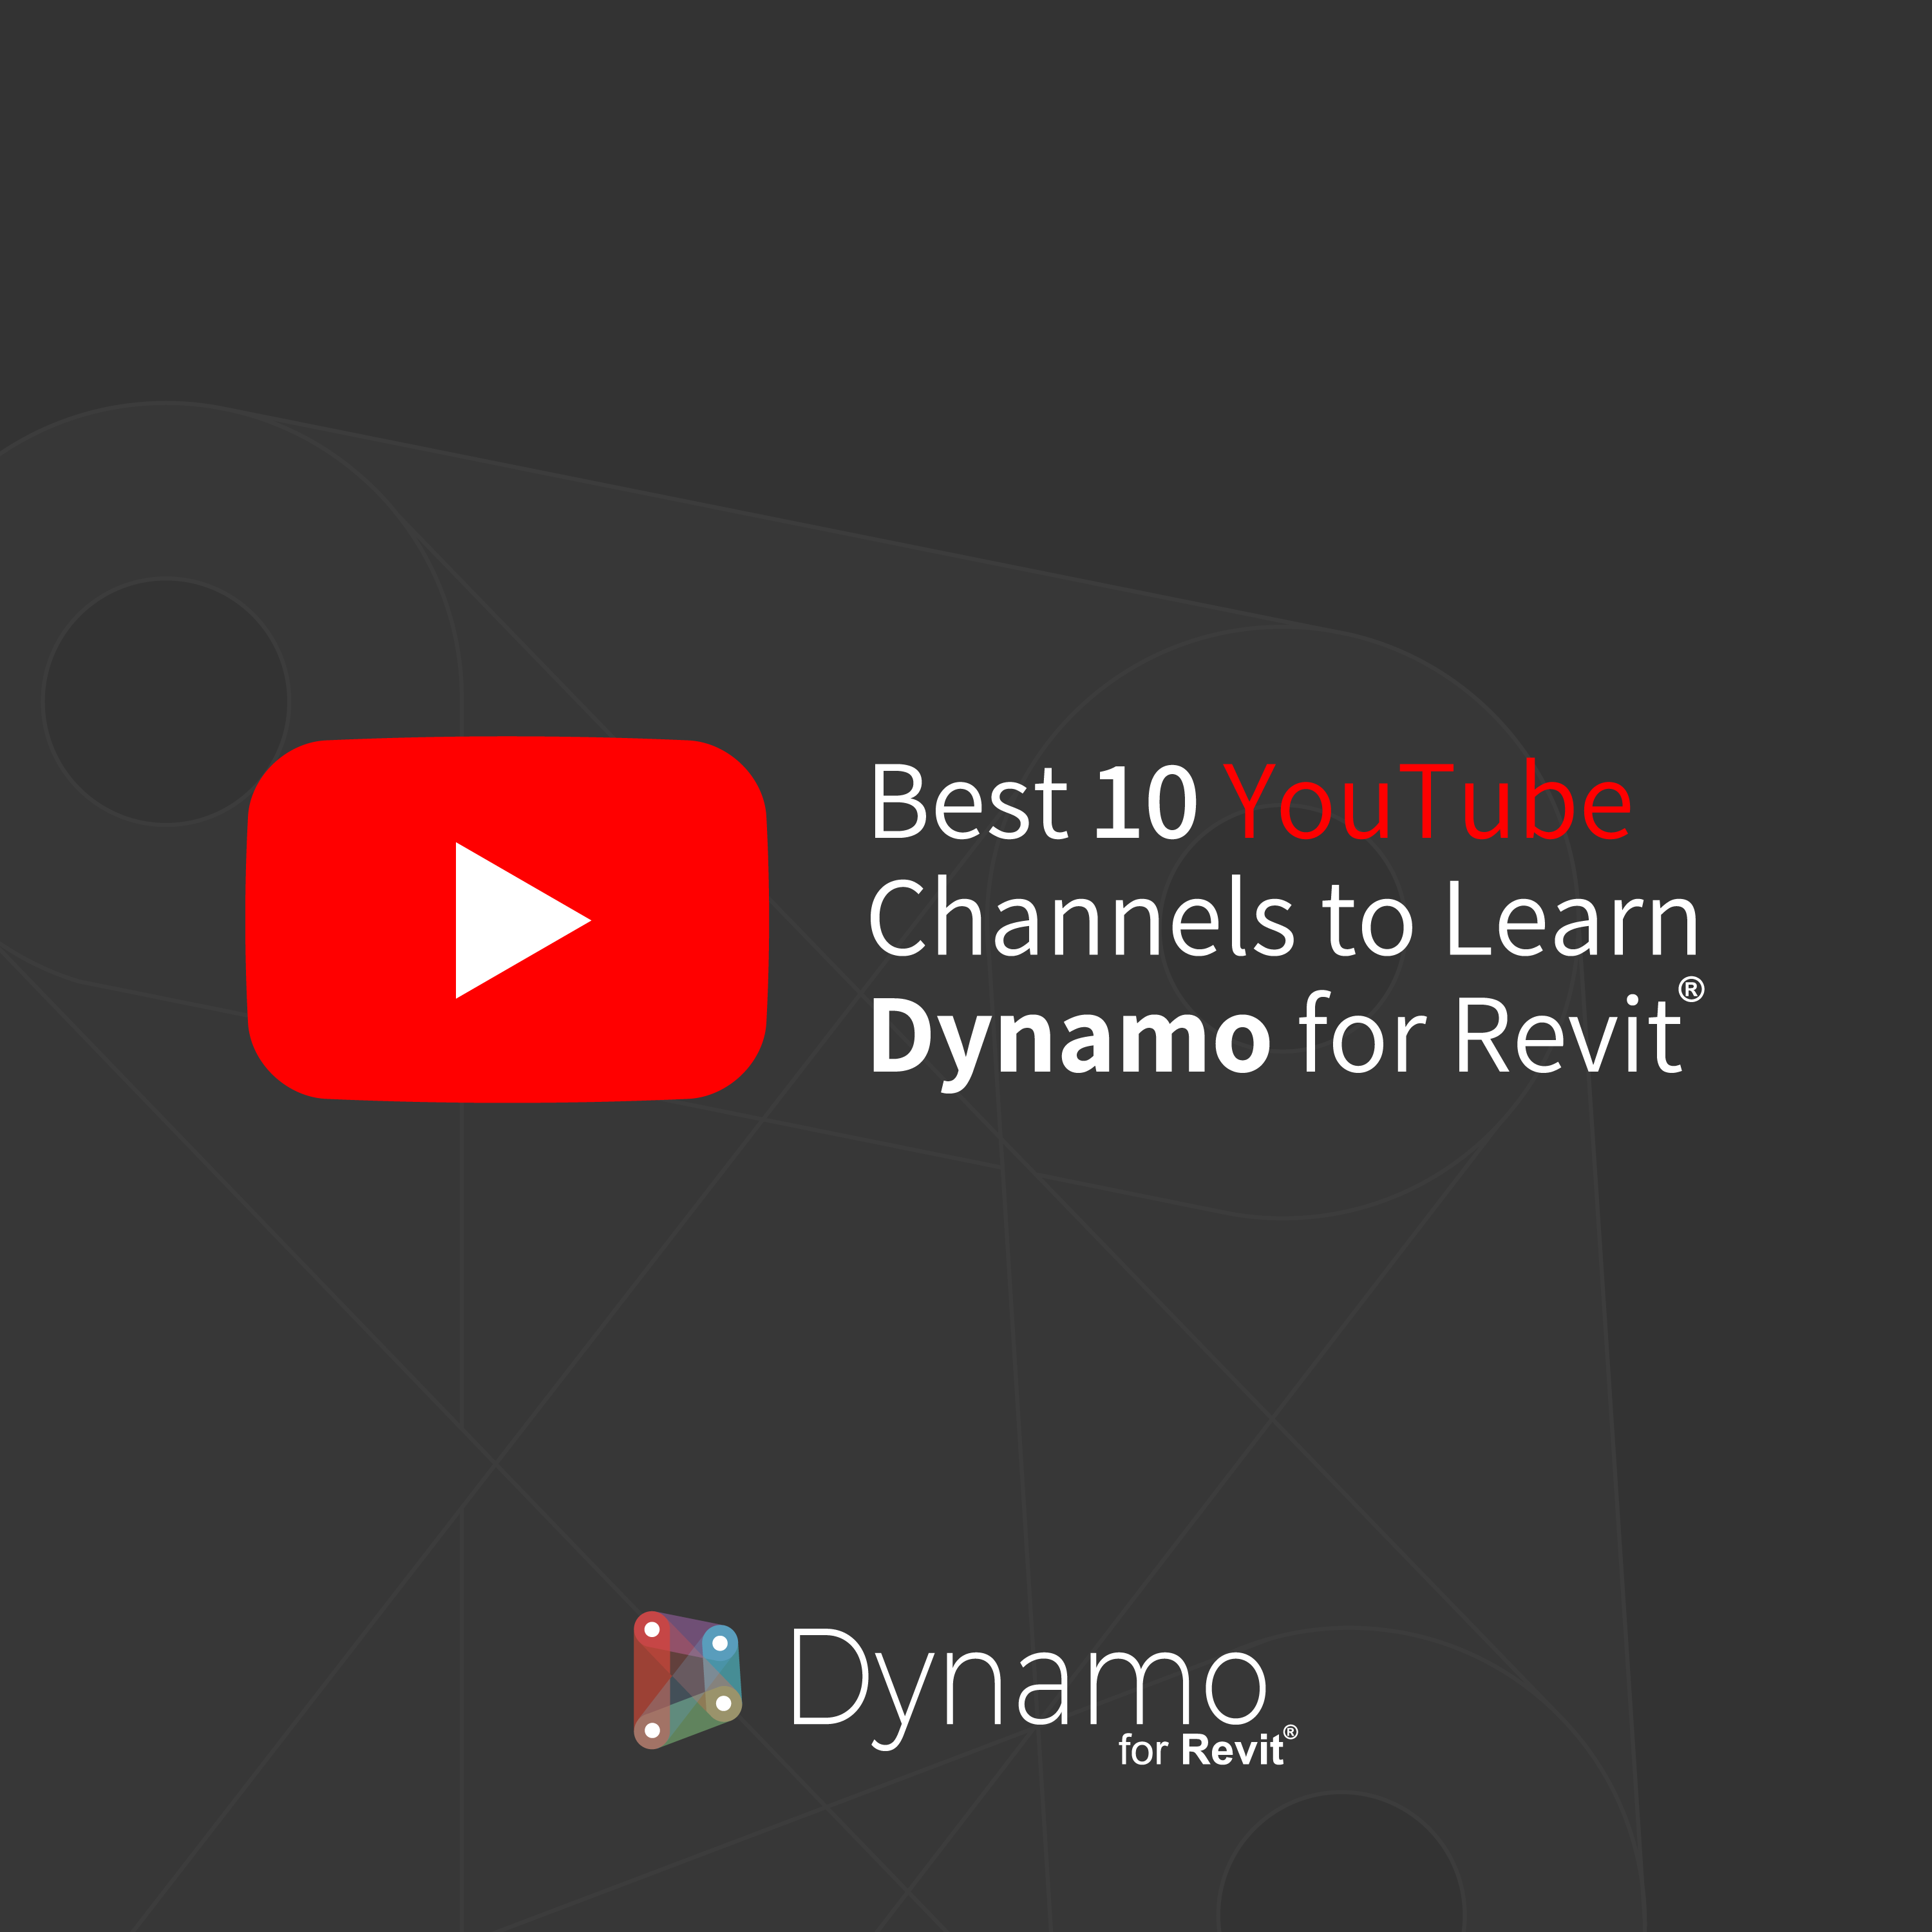 Best 10 YouTube Channels to Learn Dynamo for Revit